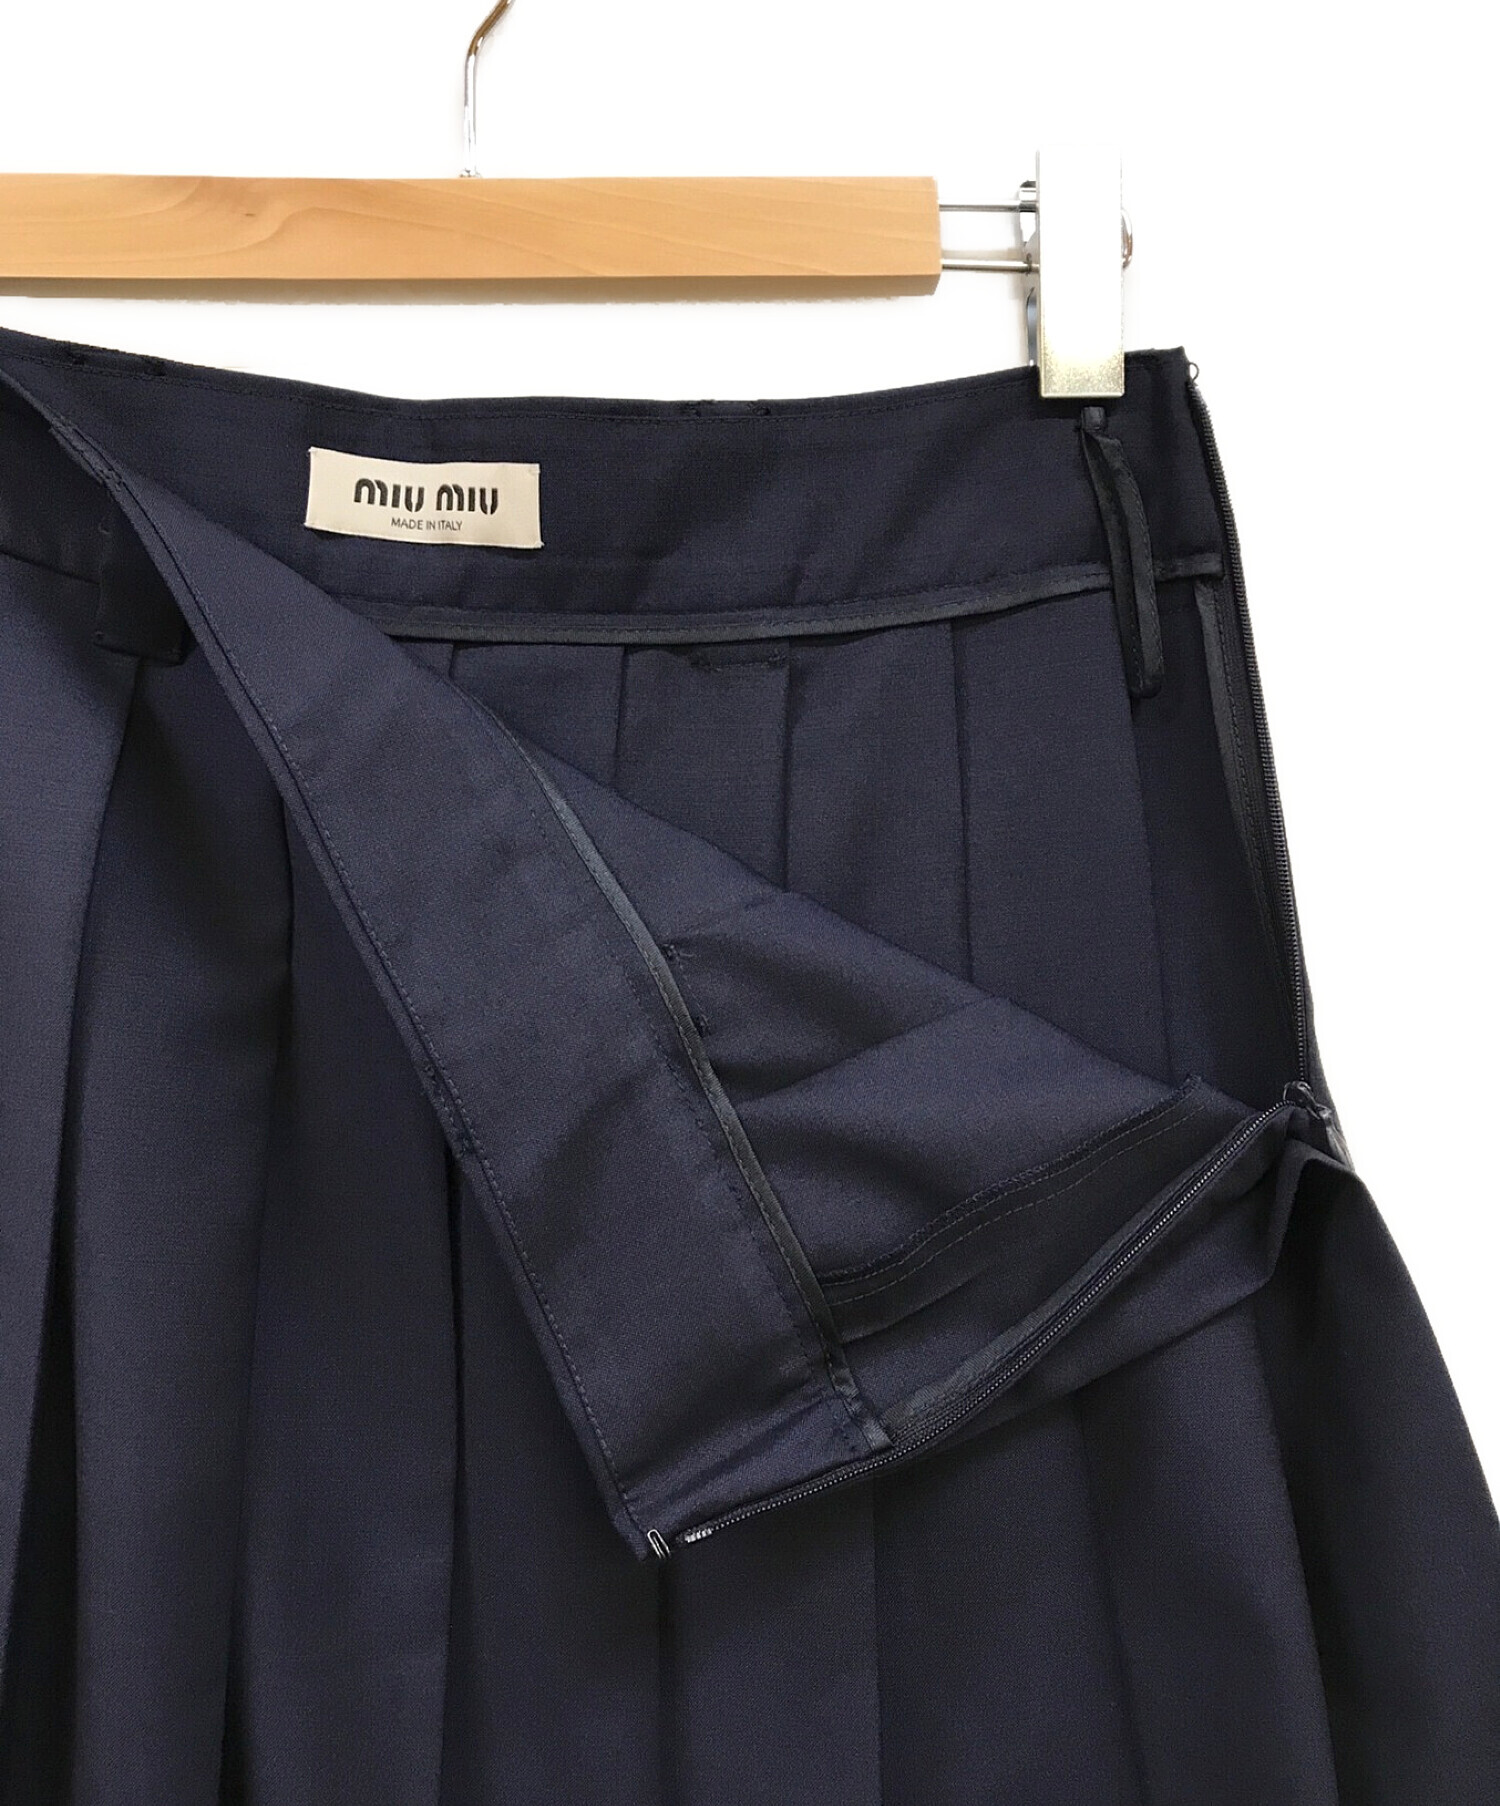 MIU MIU (ミュウミュウ) モヘアファブリック プリーツスカート ネイビー サイズ:38